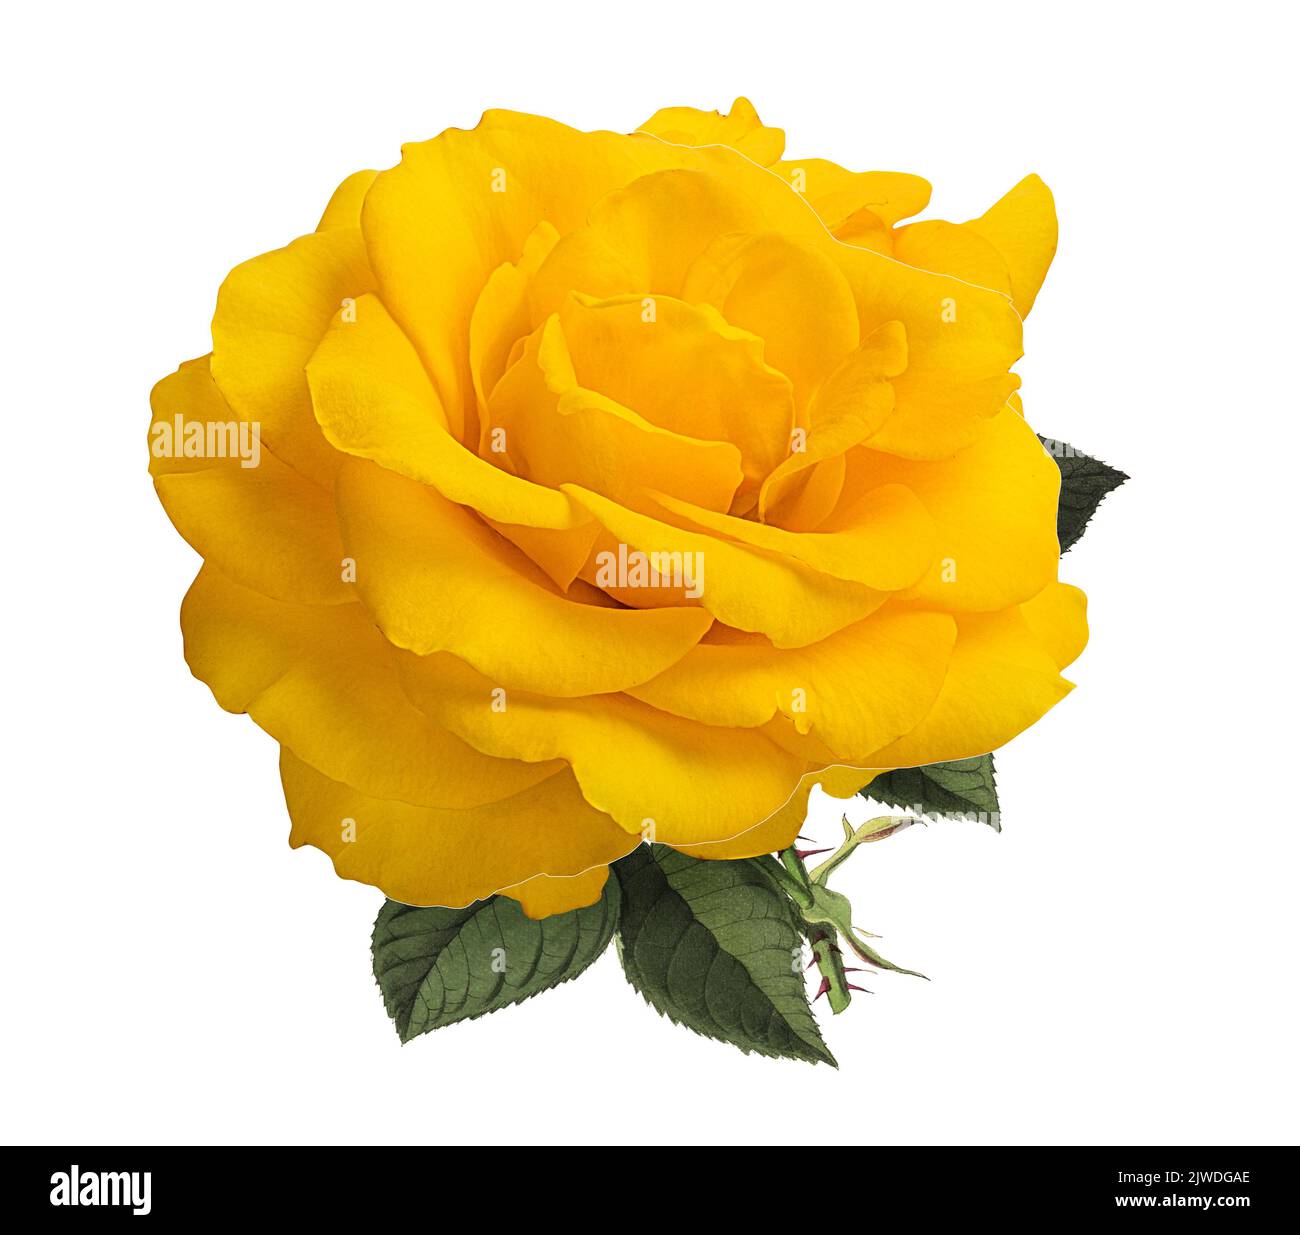 Roses isolated on white background Stock Photo